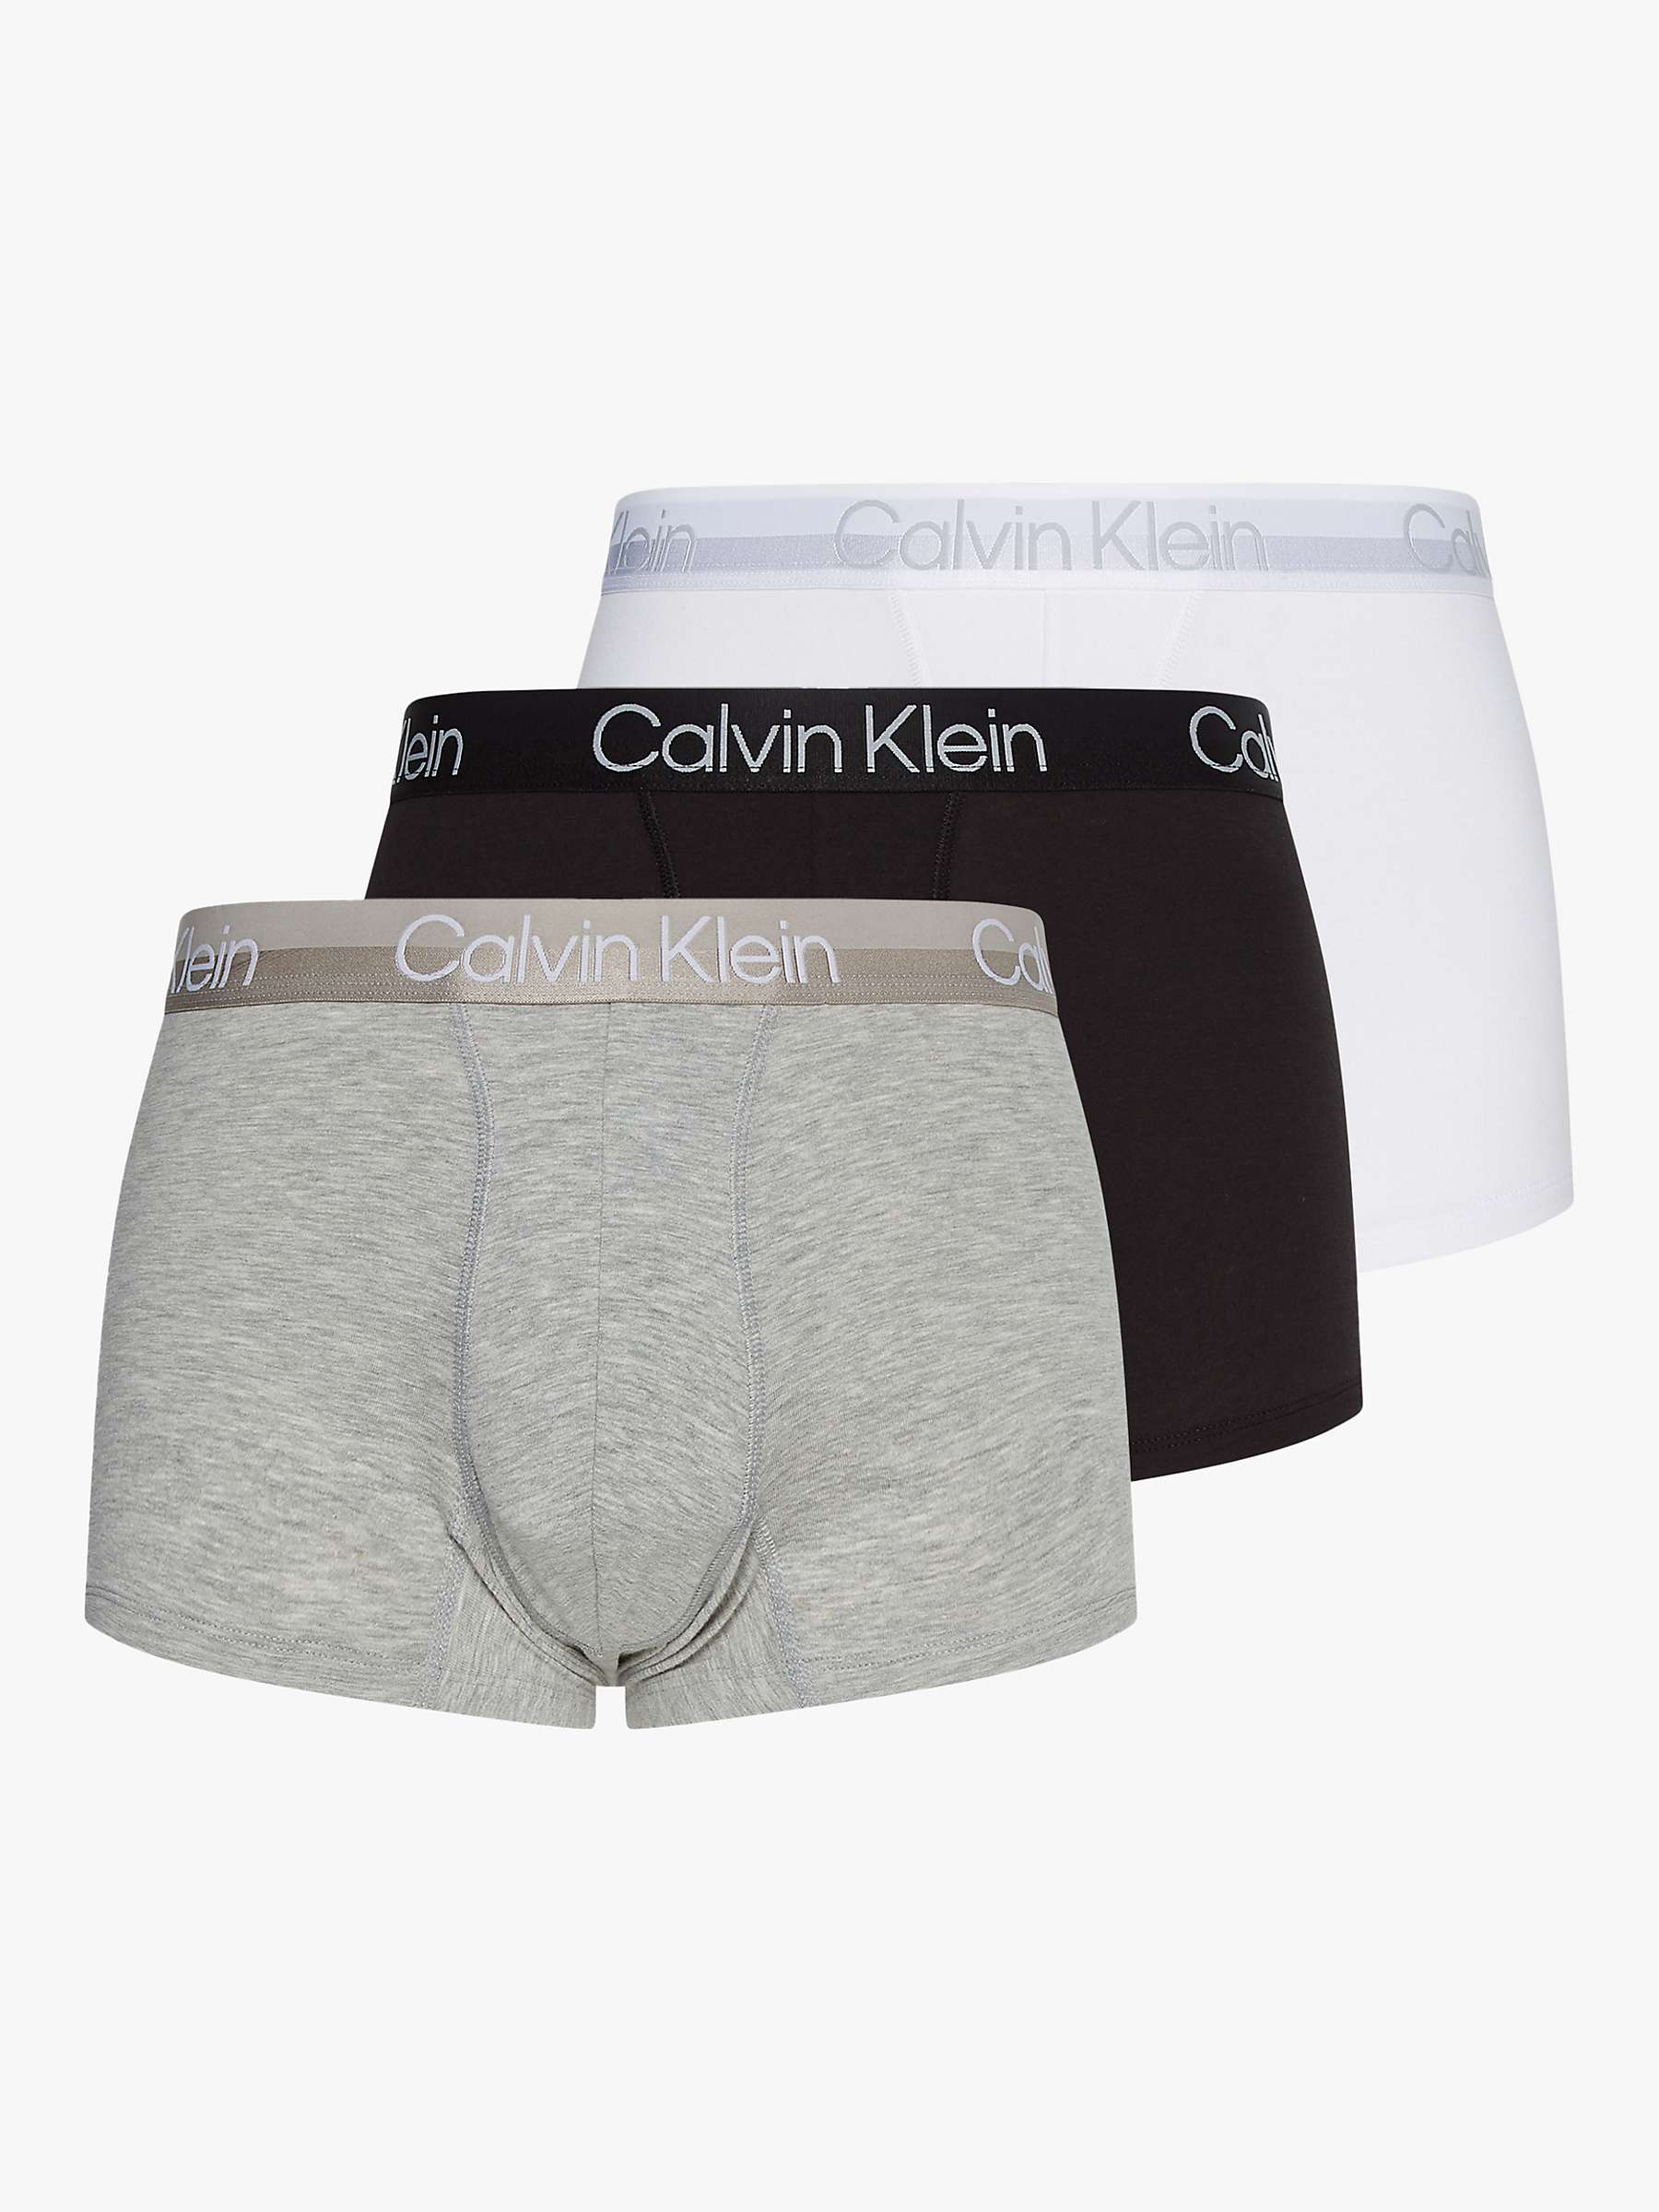 Calvin Klein Plain Logo Trunks, Pack of 3, Multi at John Lewis & Partners